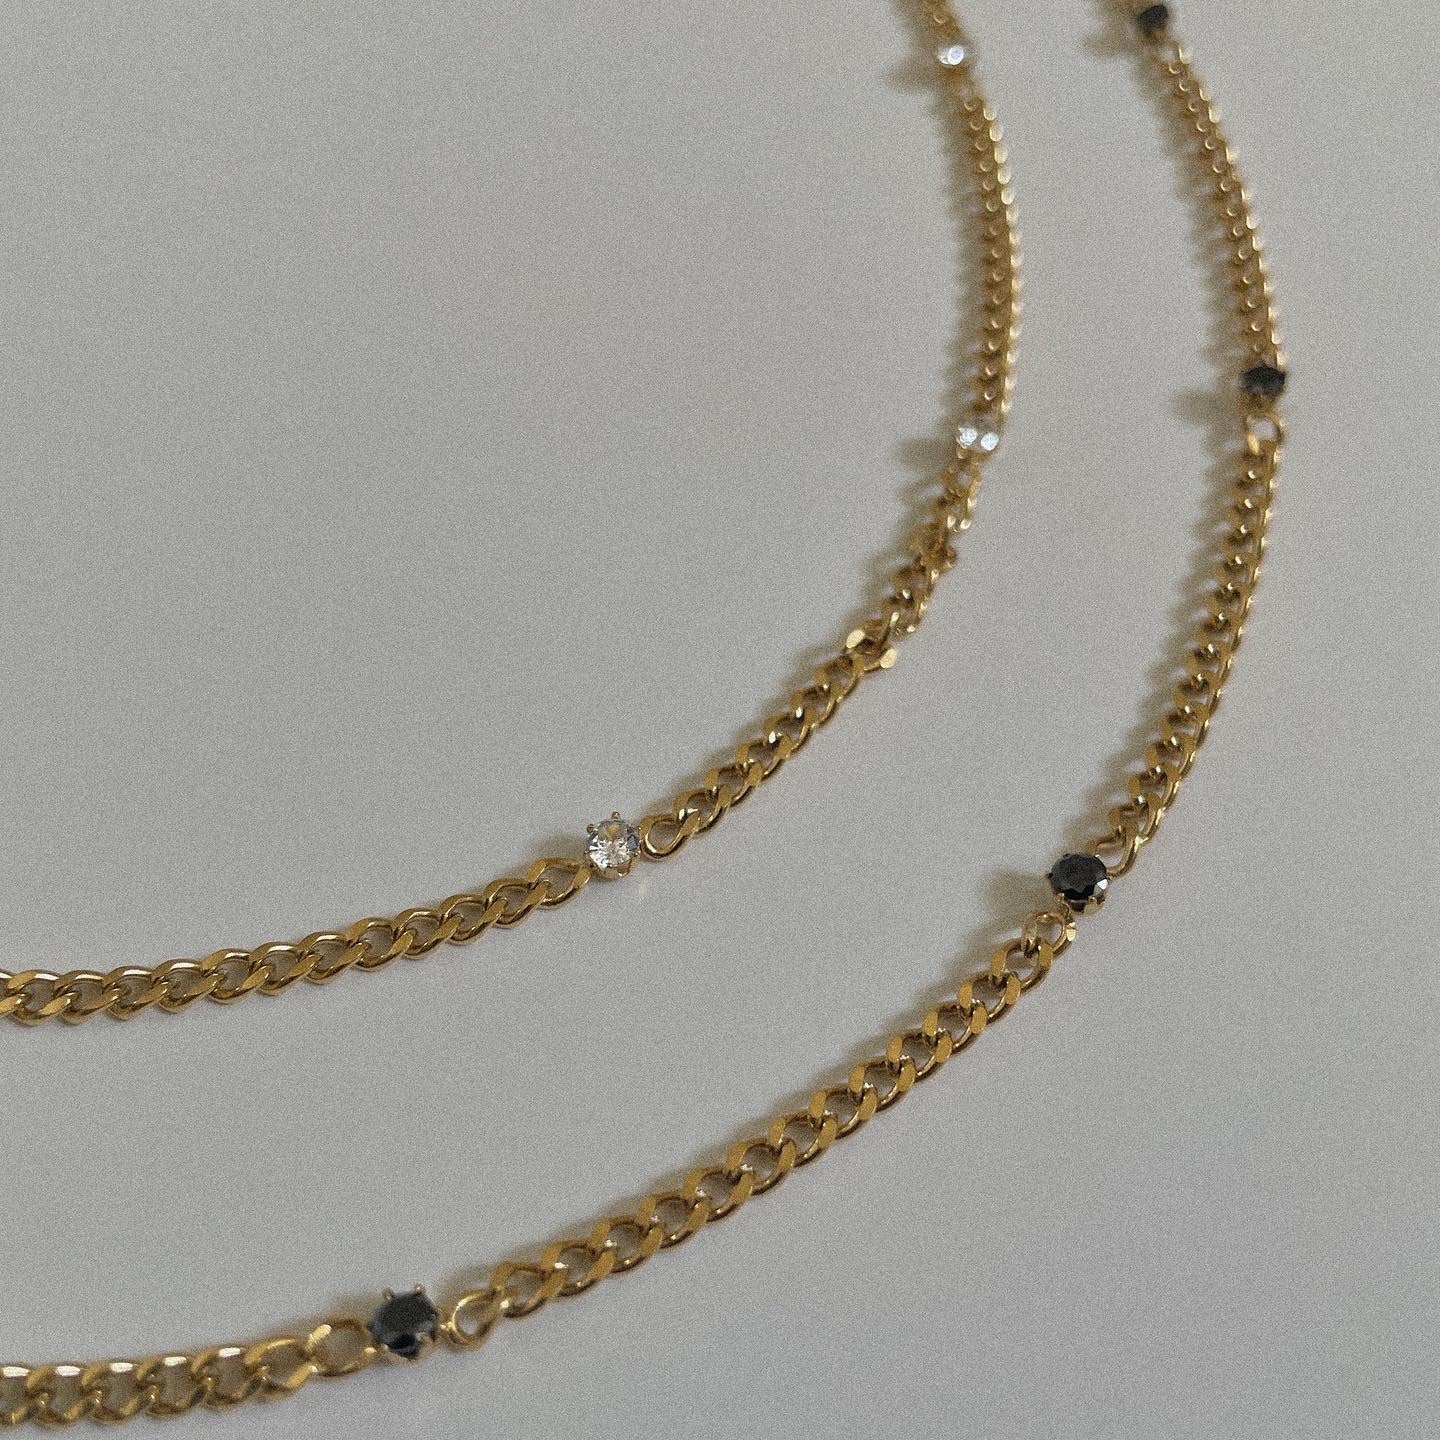 Nayva Stone Necklace - Namaste Jewelry Canada